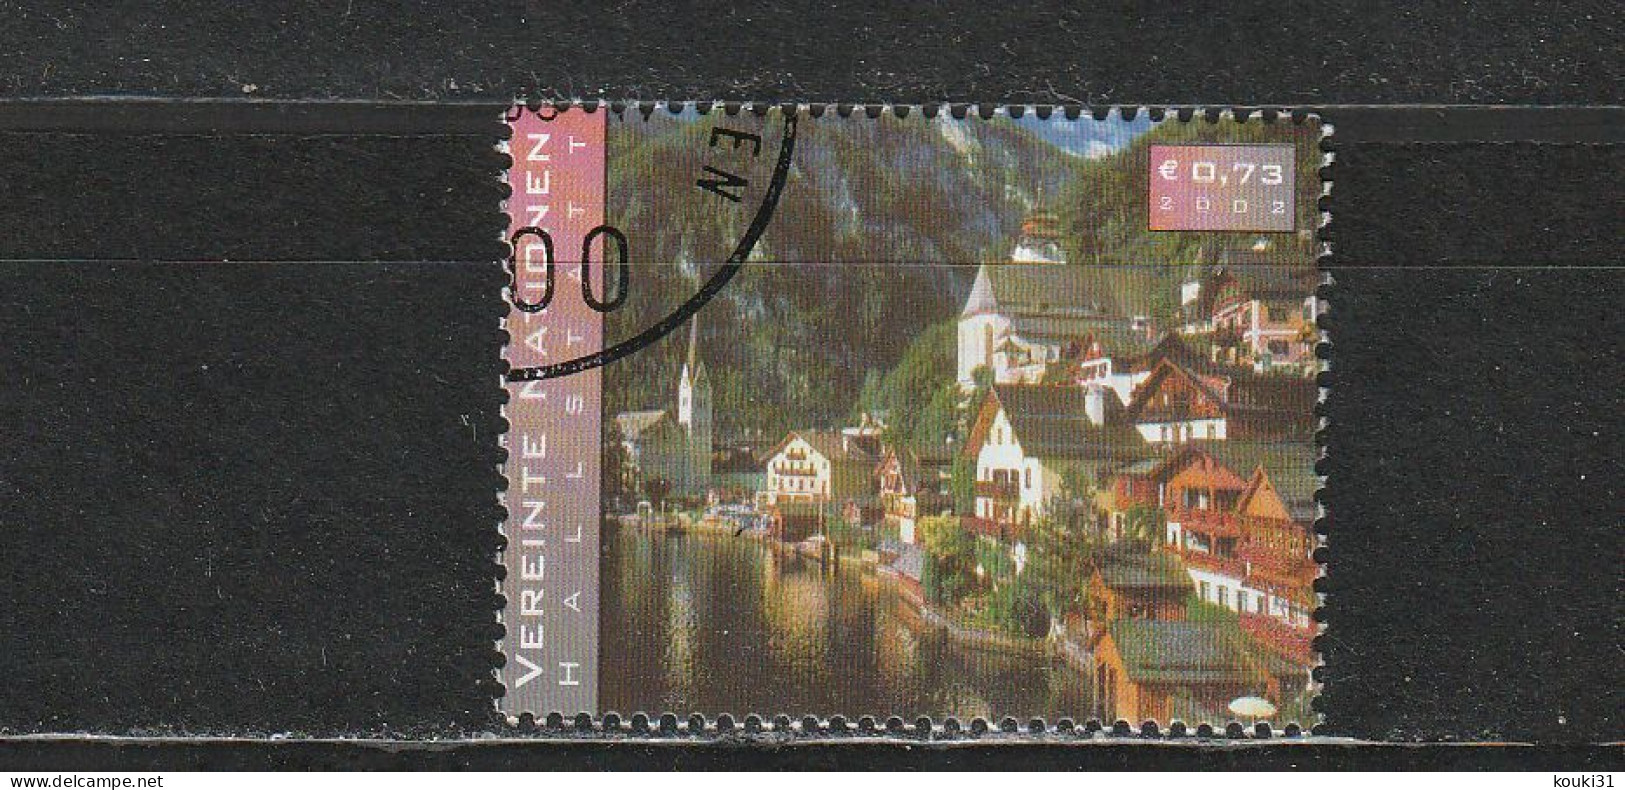 Nations Unies ( Vienne ) YT 367 Obl : Ville D'Haltstatt - 2002 - Used Stamps